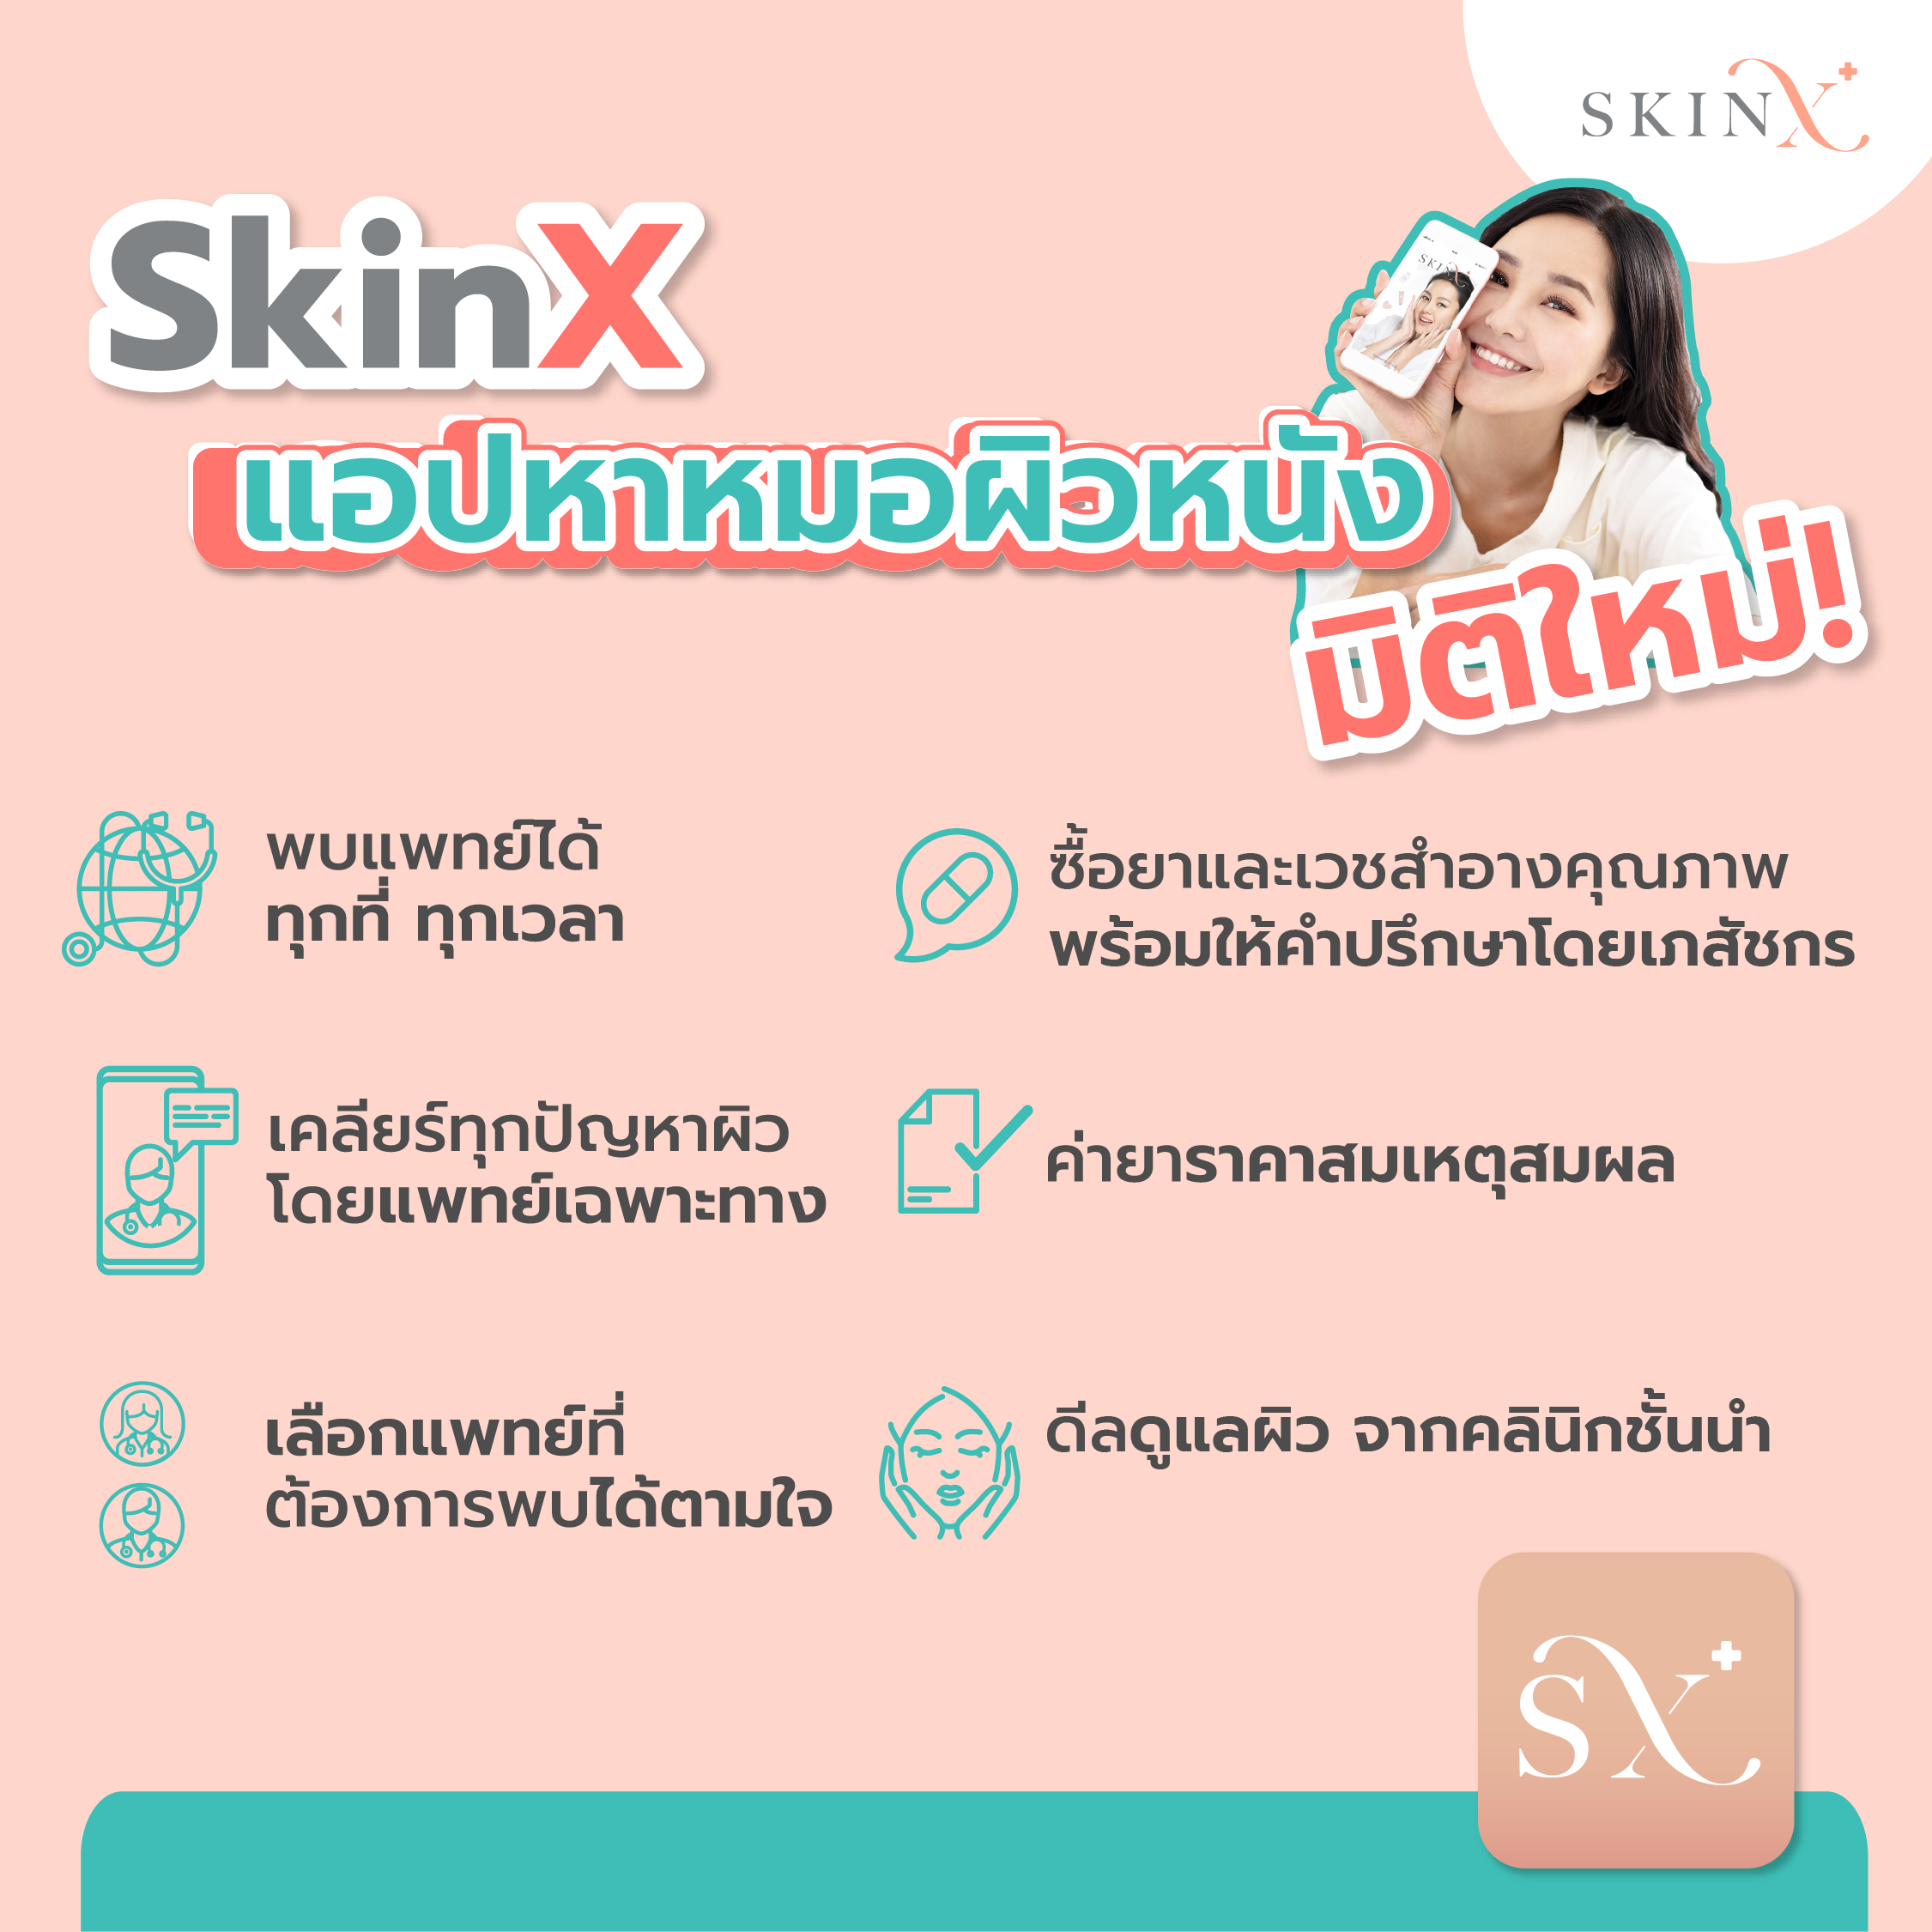 เกี่ยวกับ SkinX E-Voucher ส่วนลด 1,500 บาท สำหรับทุกการใช้จ่ายใน SkinX